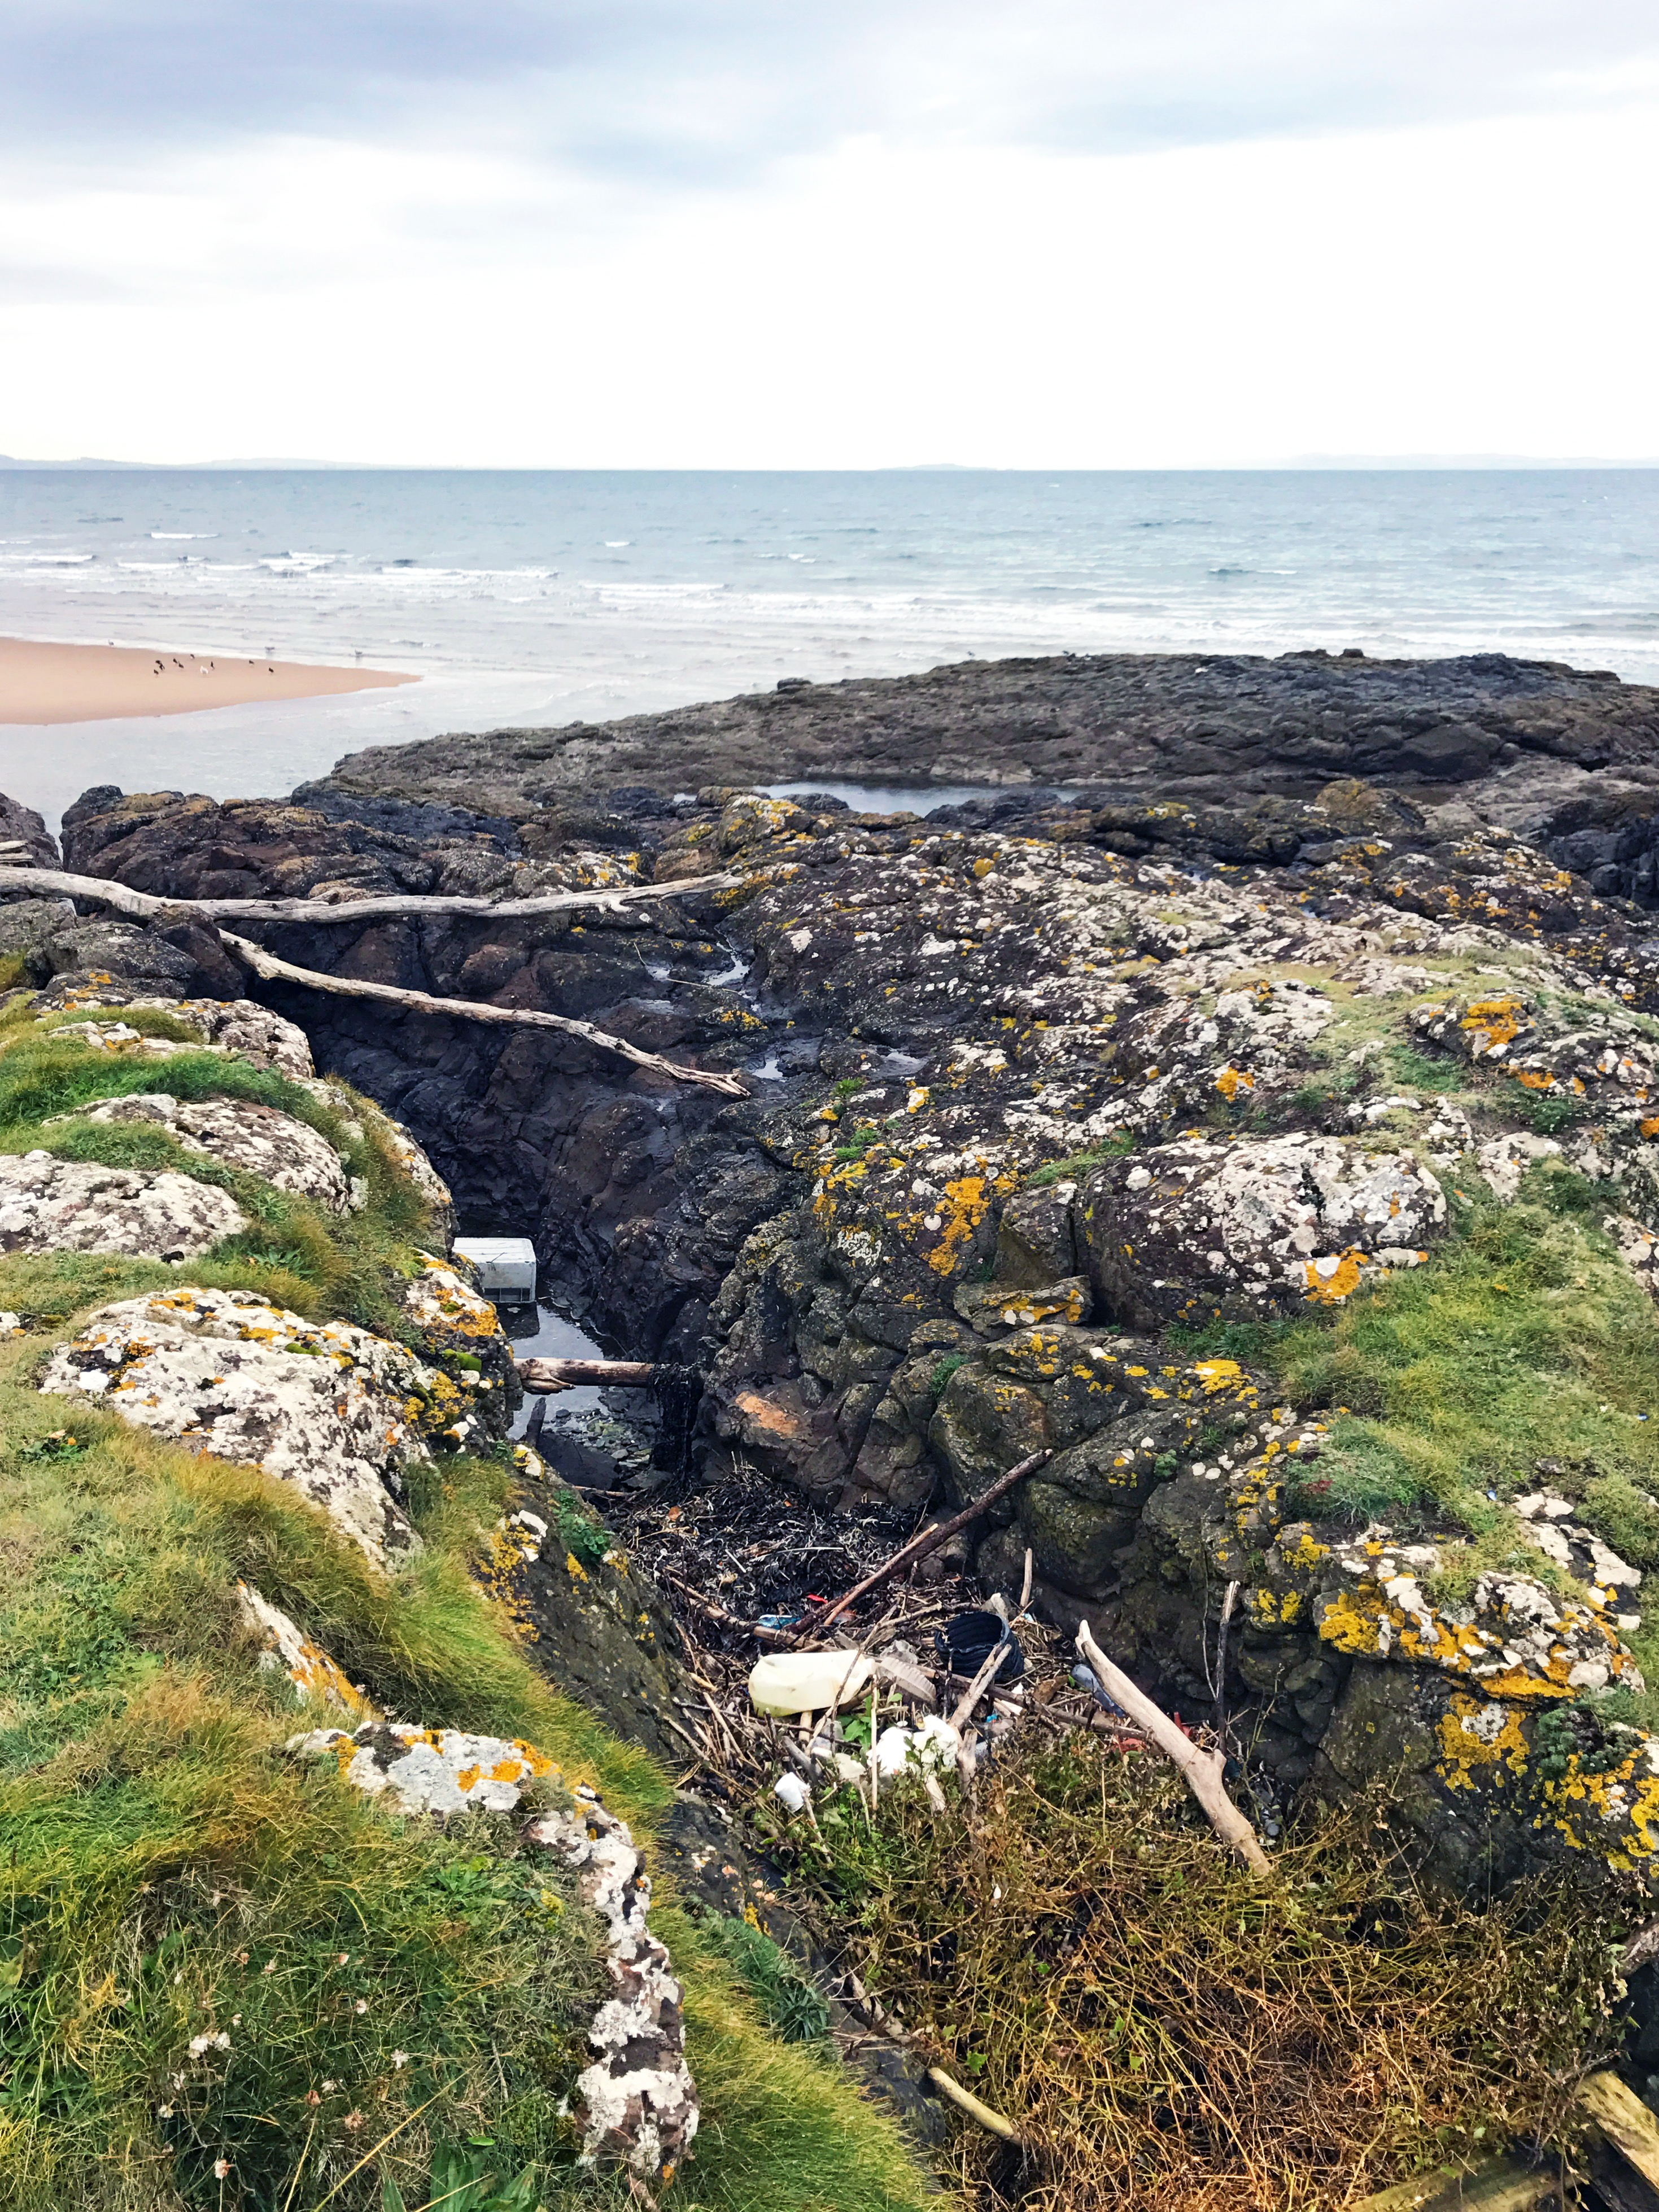 Plastic washed up on Aberlady Bay, Midlothian